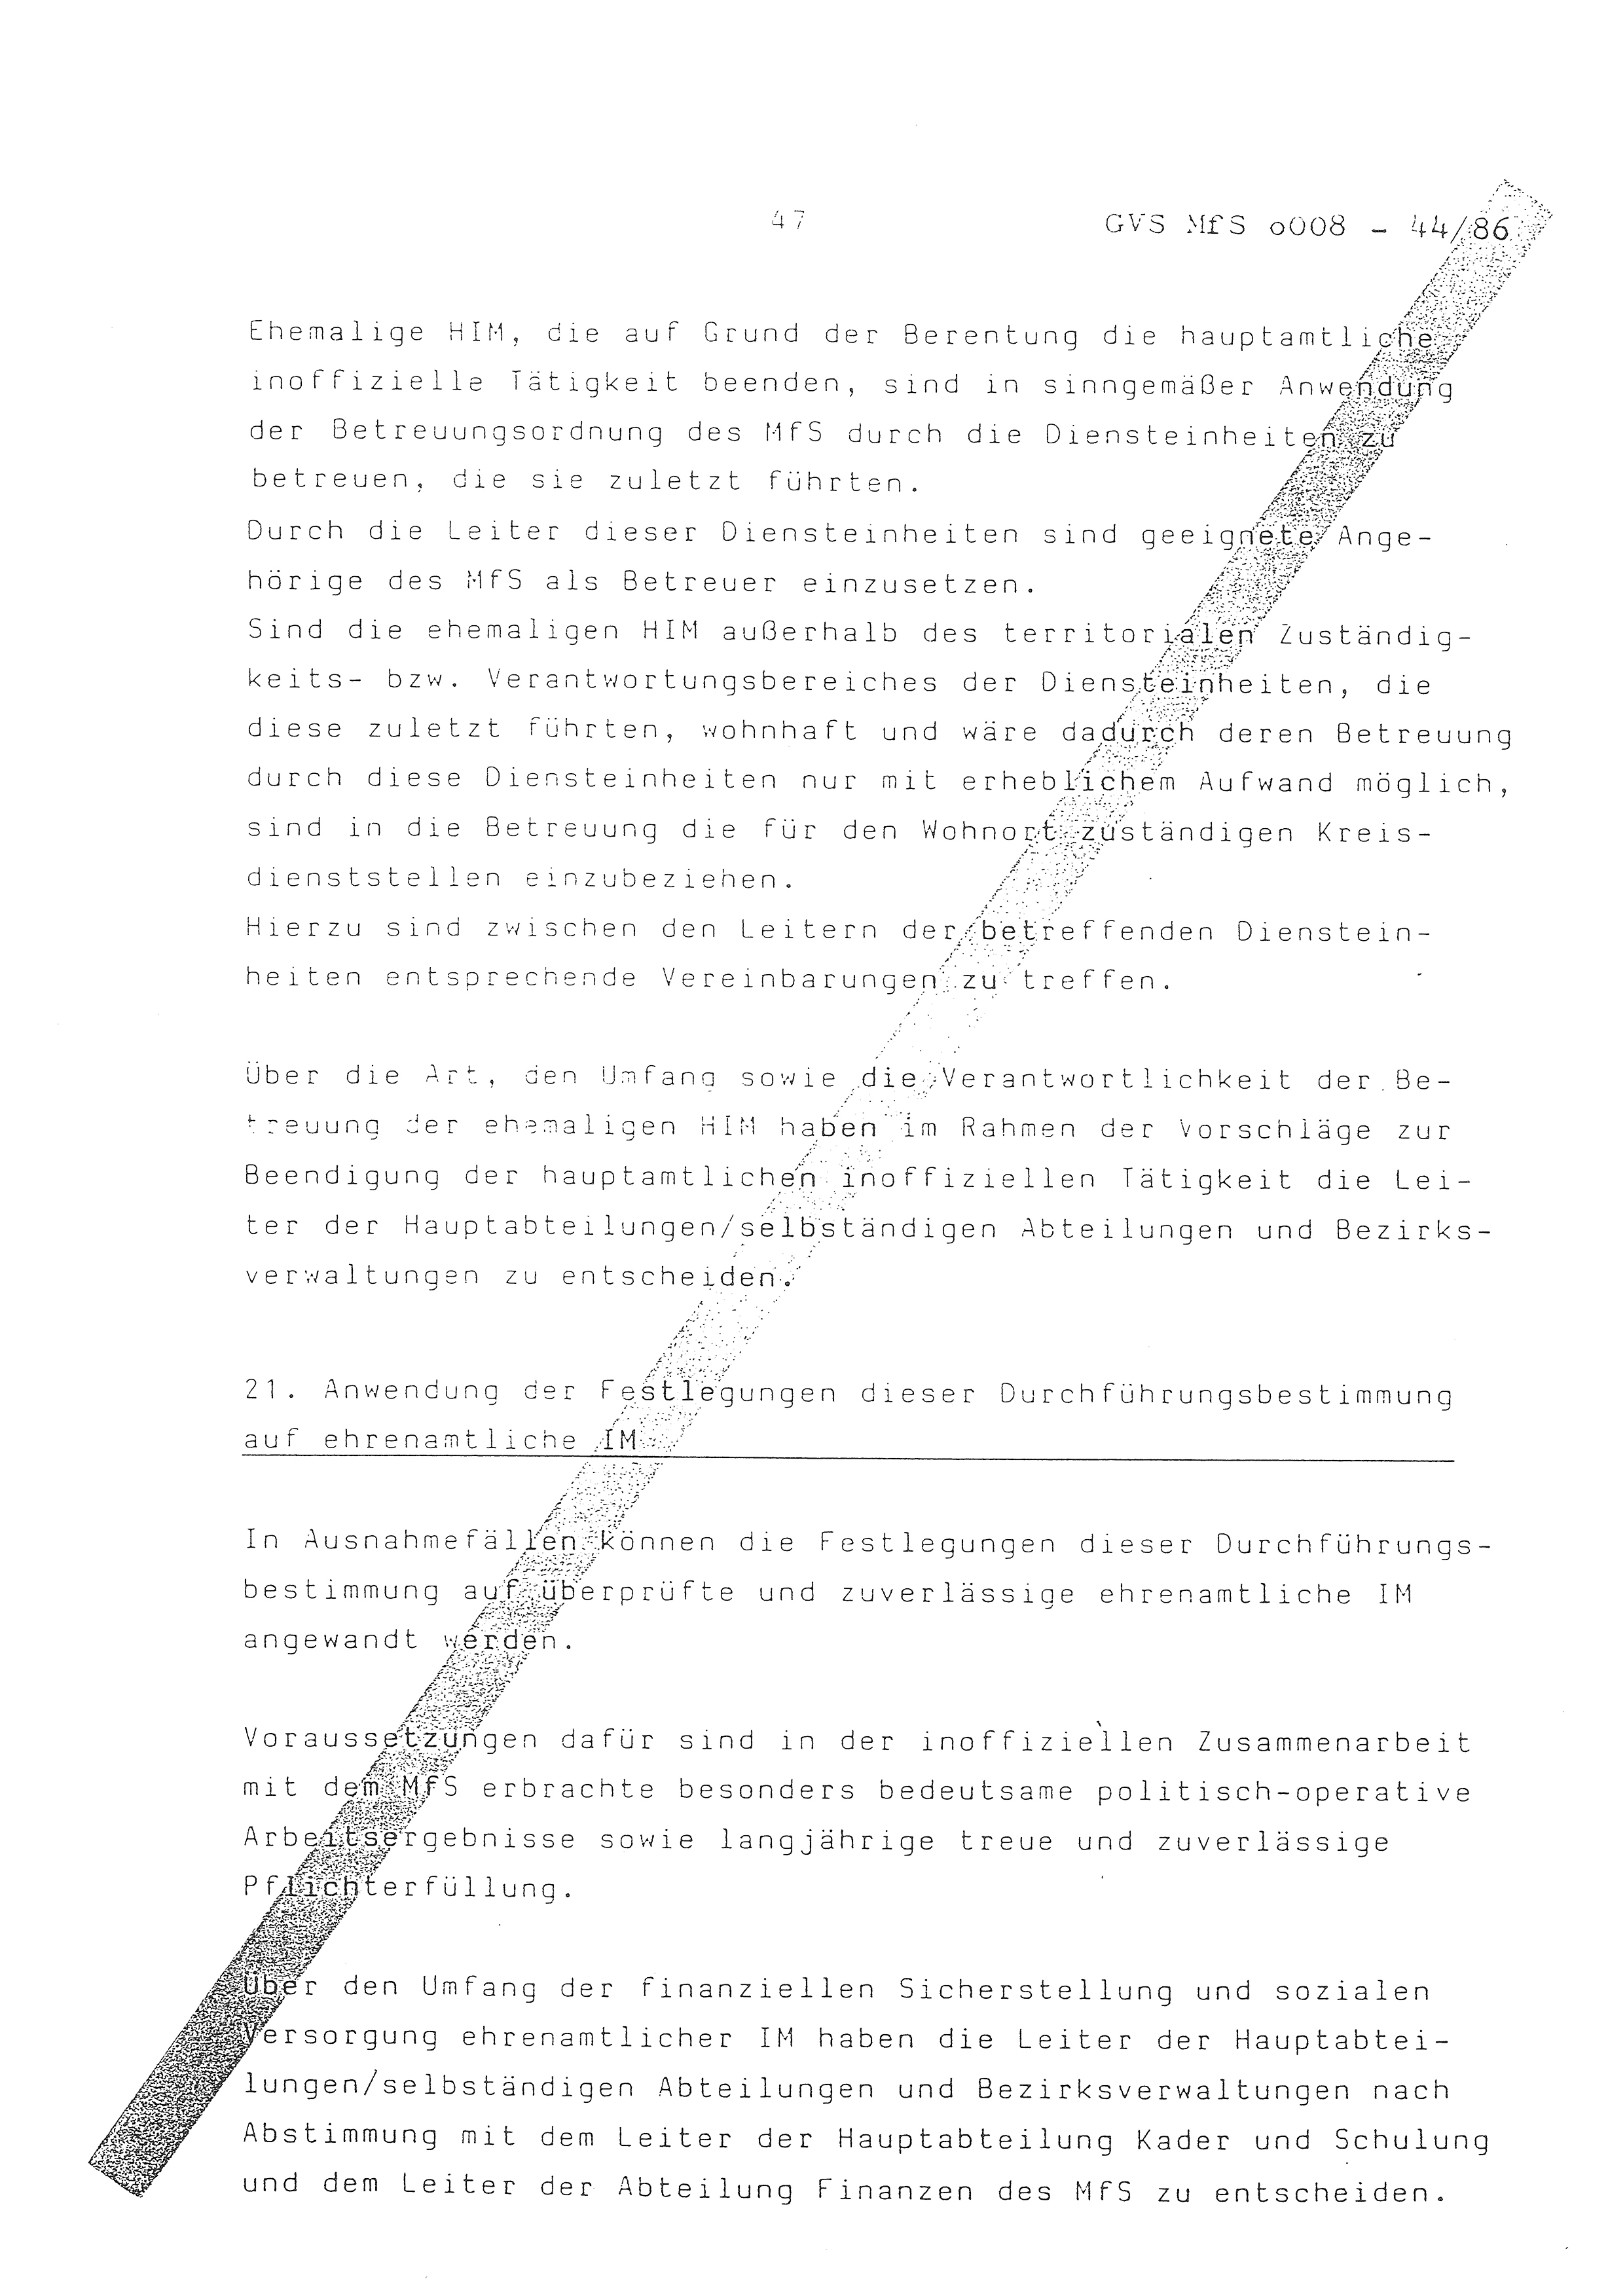 2. Durchführungsbestimmung zur Richtlinie 1/79 über die Arbeit mit hauptamtlichen Mitarbeitern des MfS (HIM), Deutsche Demokratische Republik (DDR), Ministerium für Staatssicherheit (MfS), Der Minister (Mielke), Geheime Verschlußsache (GVS) ooo8-44/86, Berlin 1986, Seite 47 (2. DB RL 1/79 DDR MfS Min. GVS ooo8-44/86 1986, S. 47)